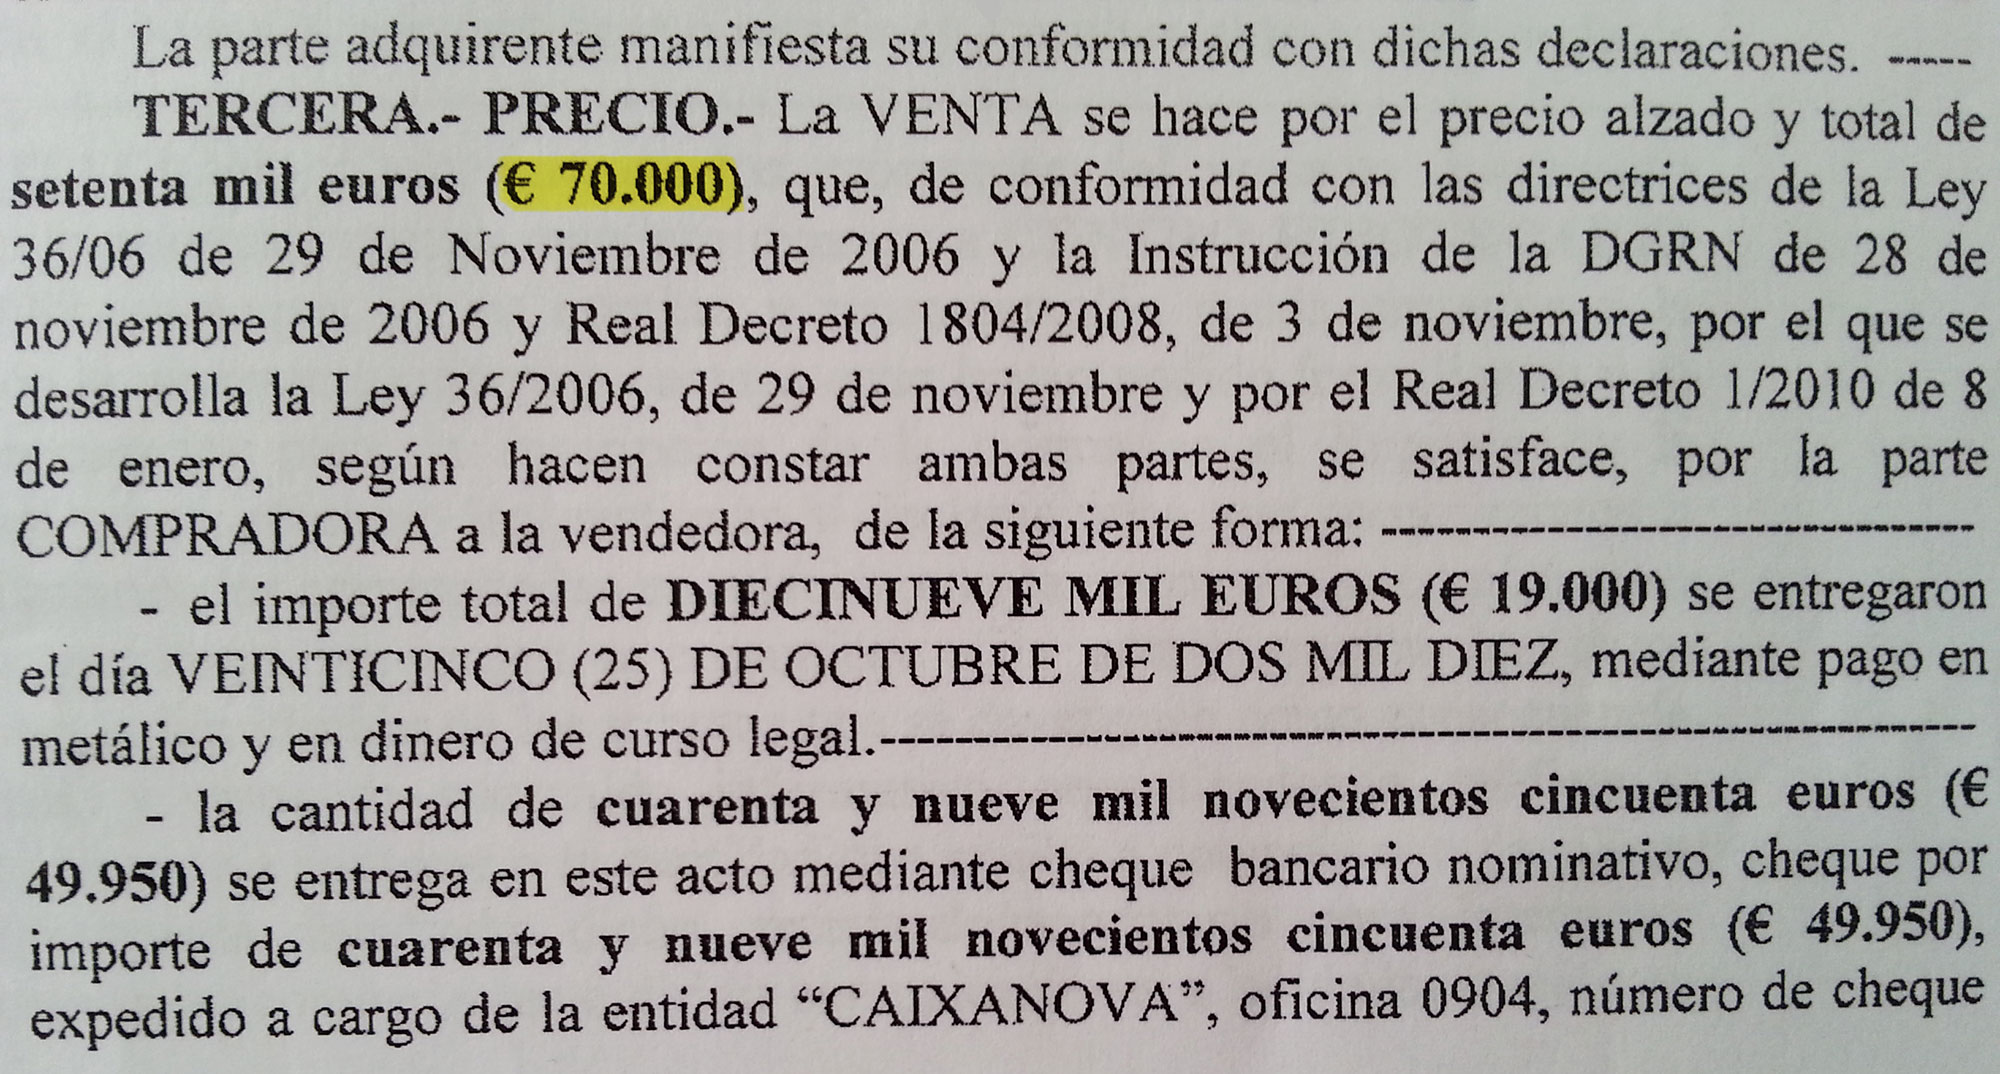 Хозяева продавали квартиру за 70 000 €, а покупателям пришлось заплатить 87 000 €